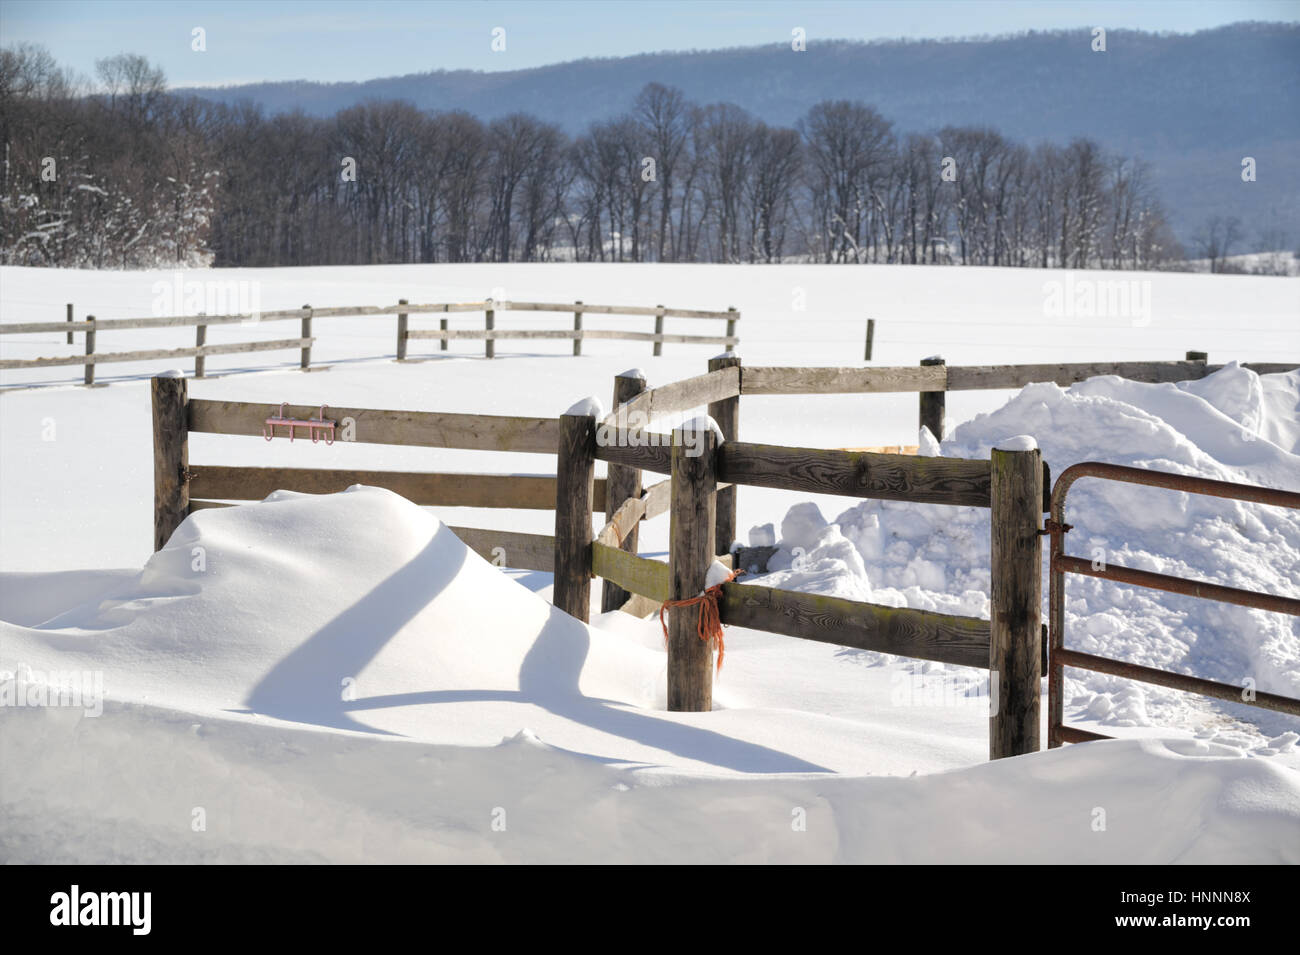 Los campos de granja con un vallado en pasto en desviado en invierno, la nieve de los fondos agrícolas, árboles y montañas estériles, copie el espacio, Pennsylvania, Pensilvania, EE.UU. Foto de stock